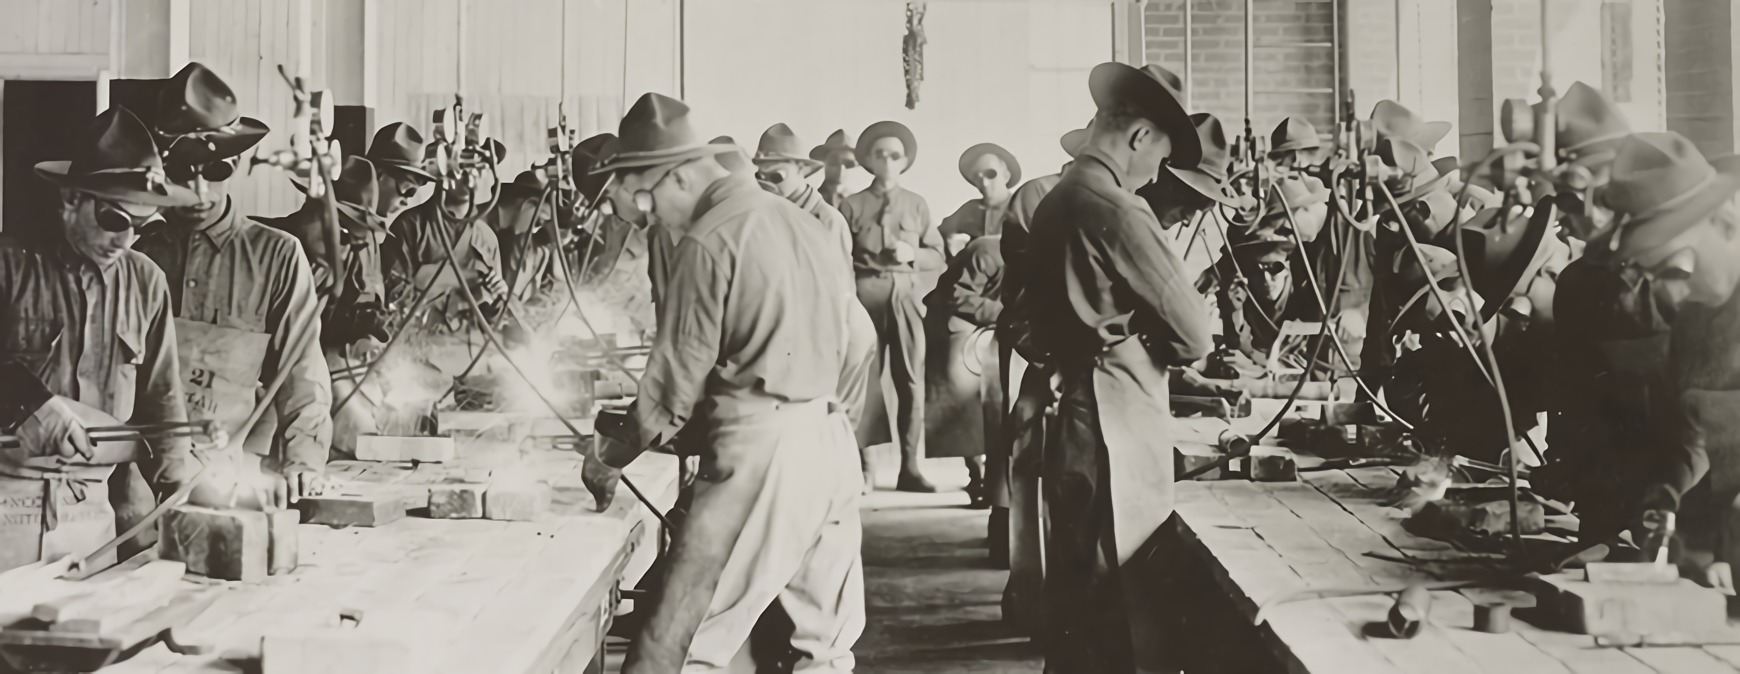 soldados recibiendo entrenamiento de soldadura